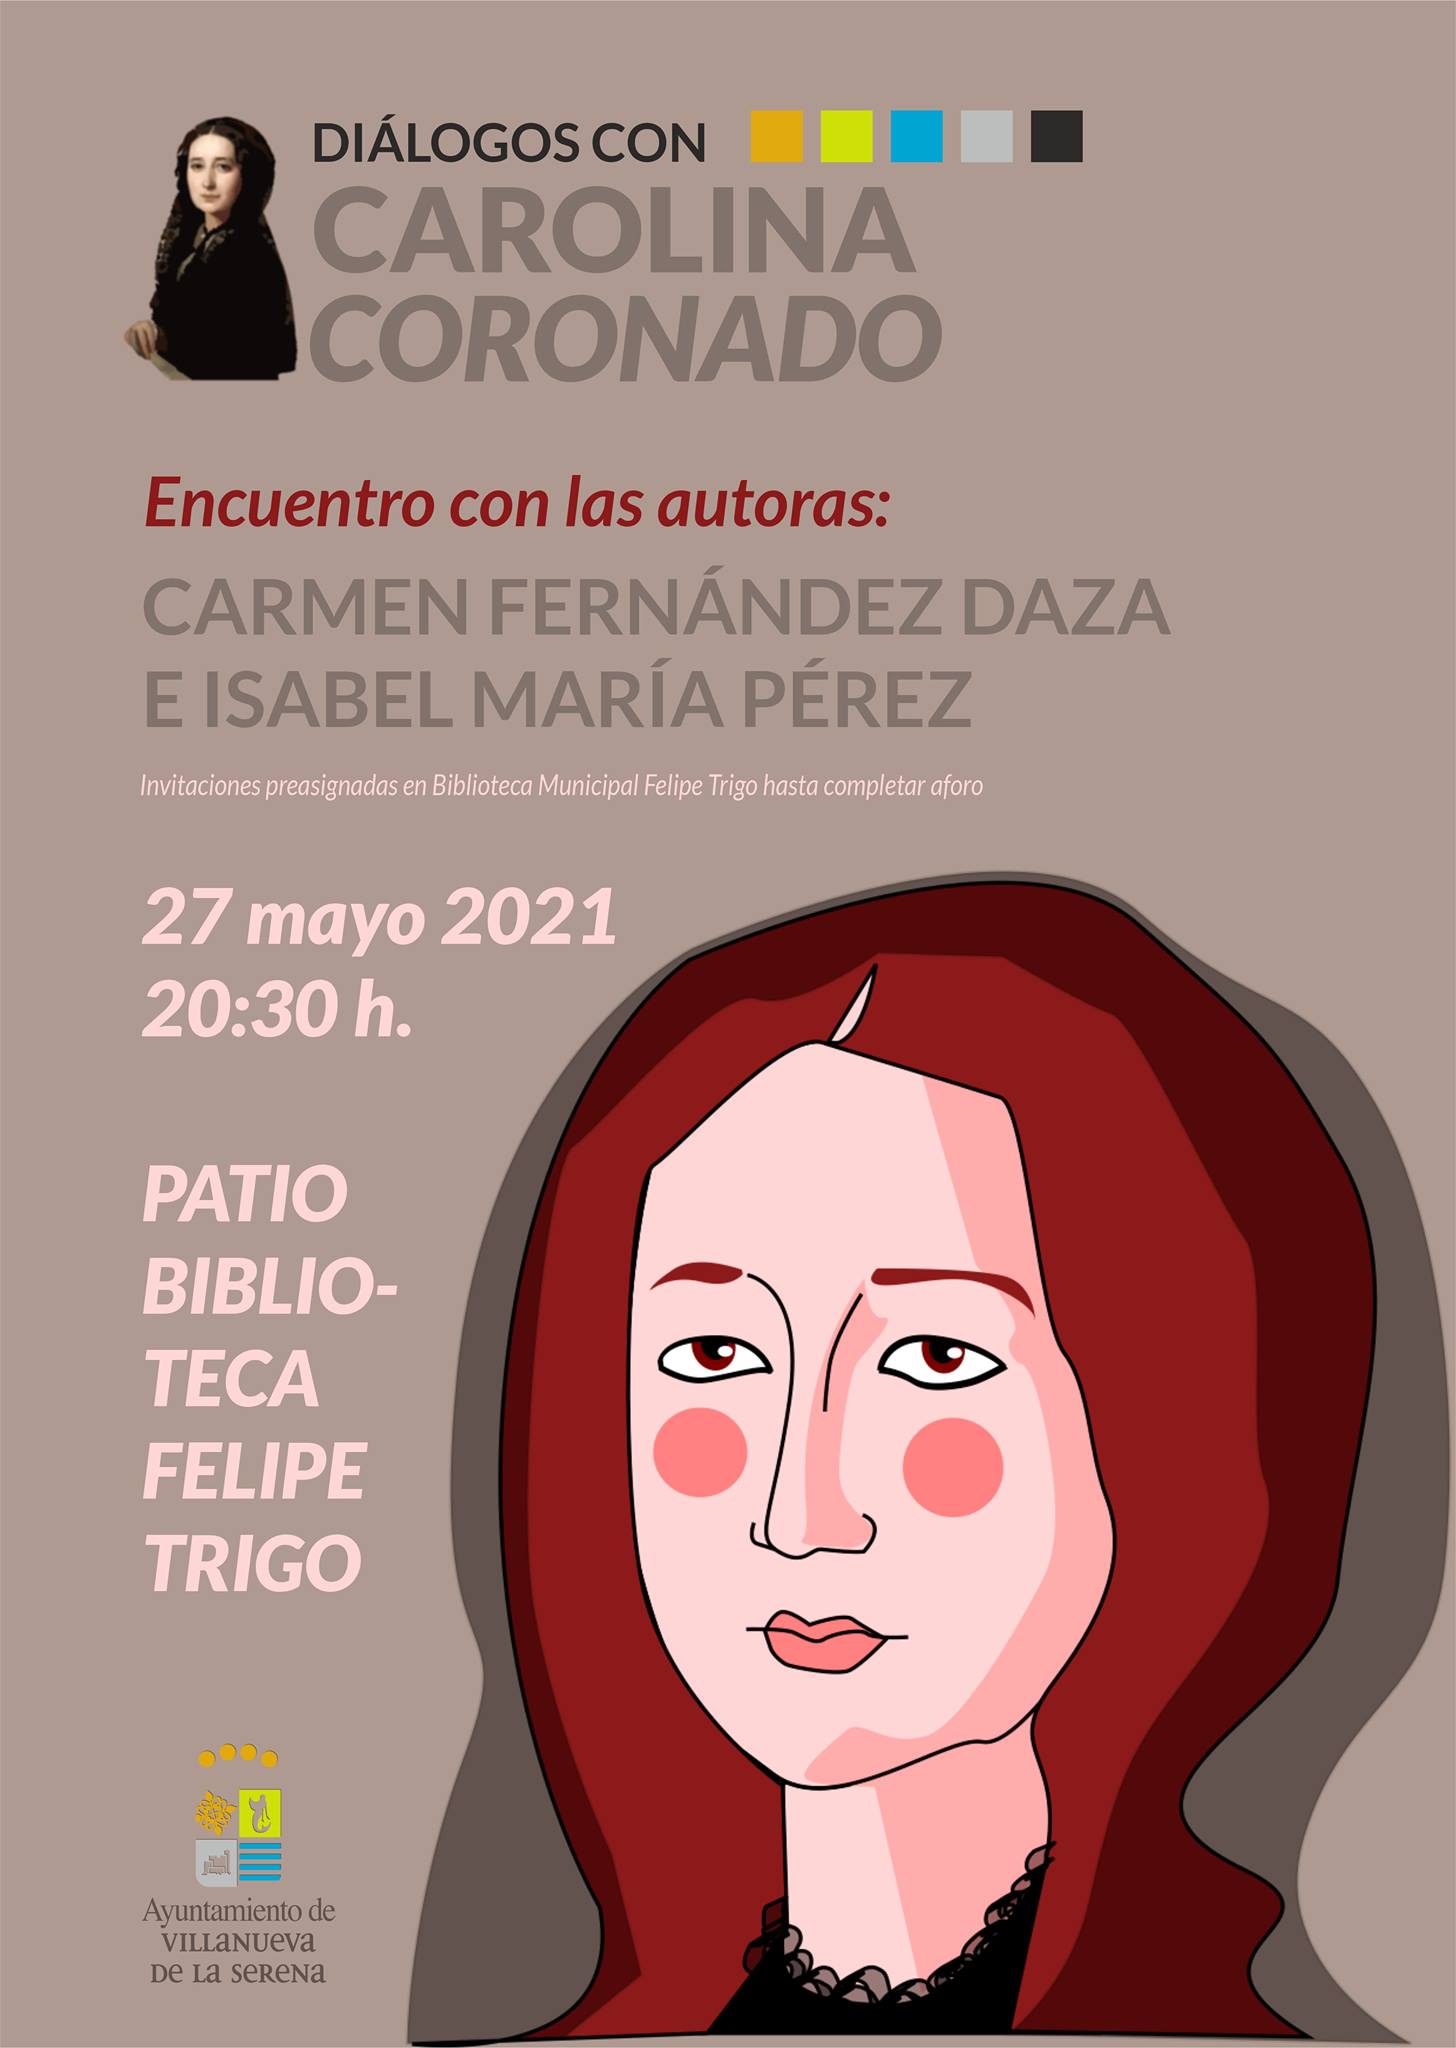 'Diálogos con Carolina Coronado'